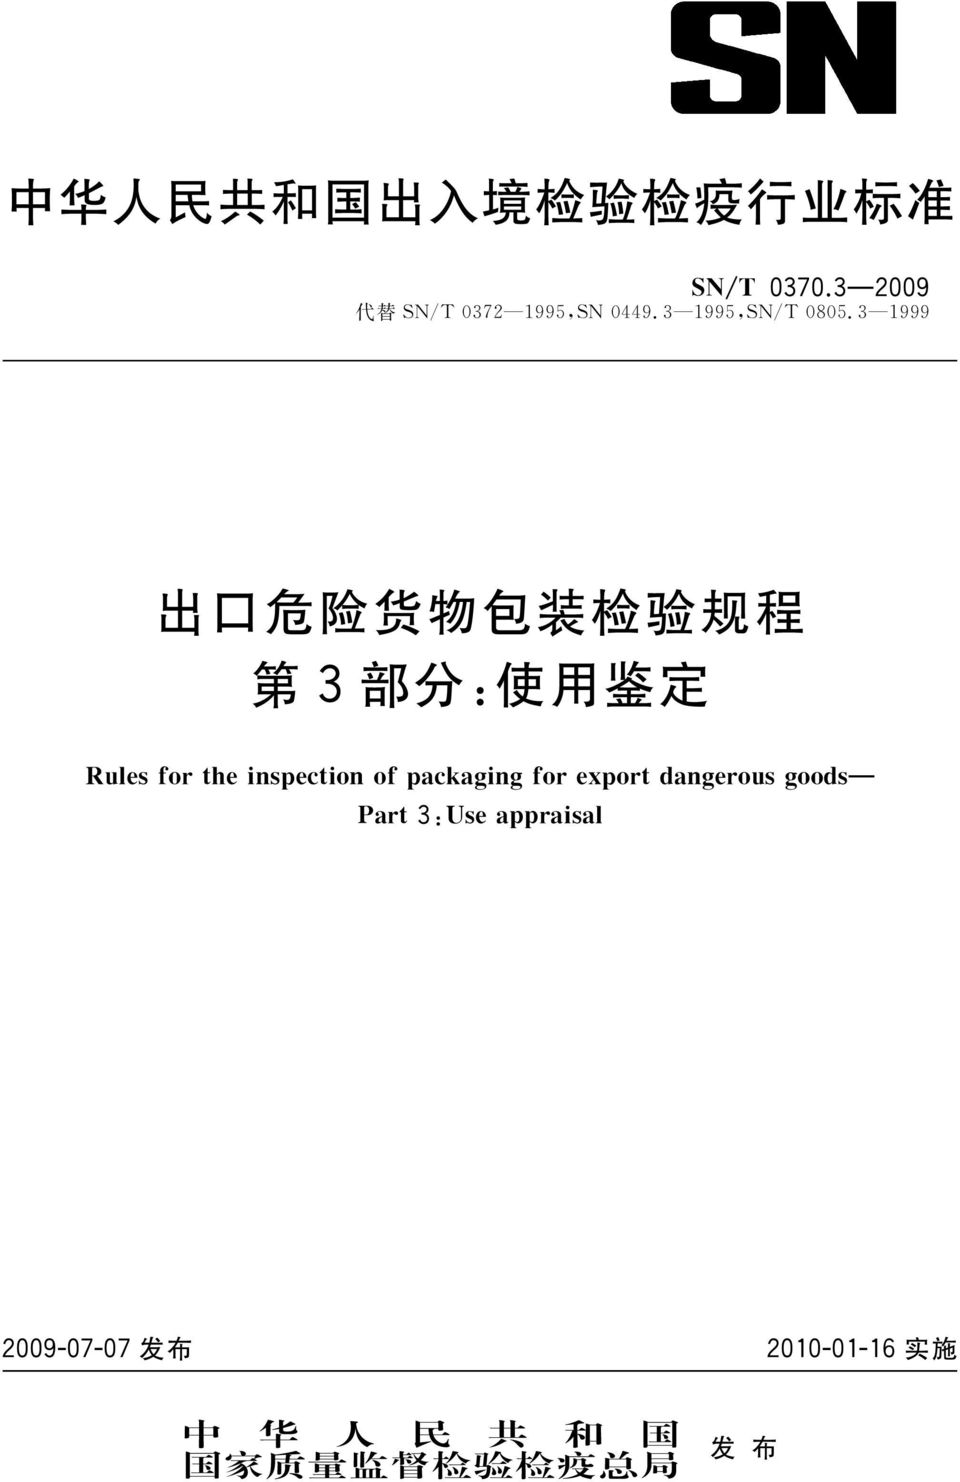 3 1999 出 口 危 险 货 物 包 装 检 验 规 程 第 3 部 分 : 使 用 鉴 定 犚 狌 犾 犲 狊 犳 狅 狉 狋 犺 犲 犻 狀 狊 狆 犲 犮 狋 犻 狅 狀